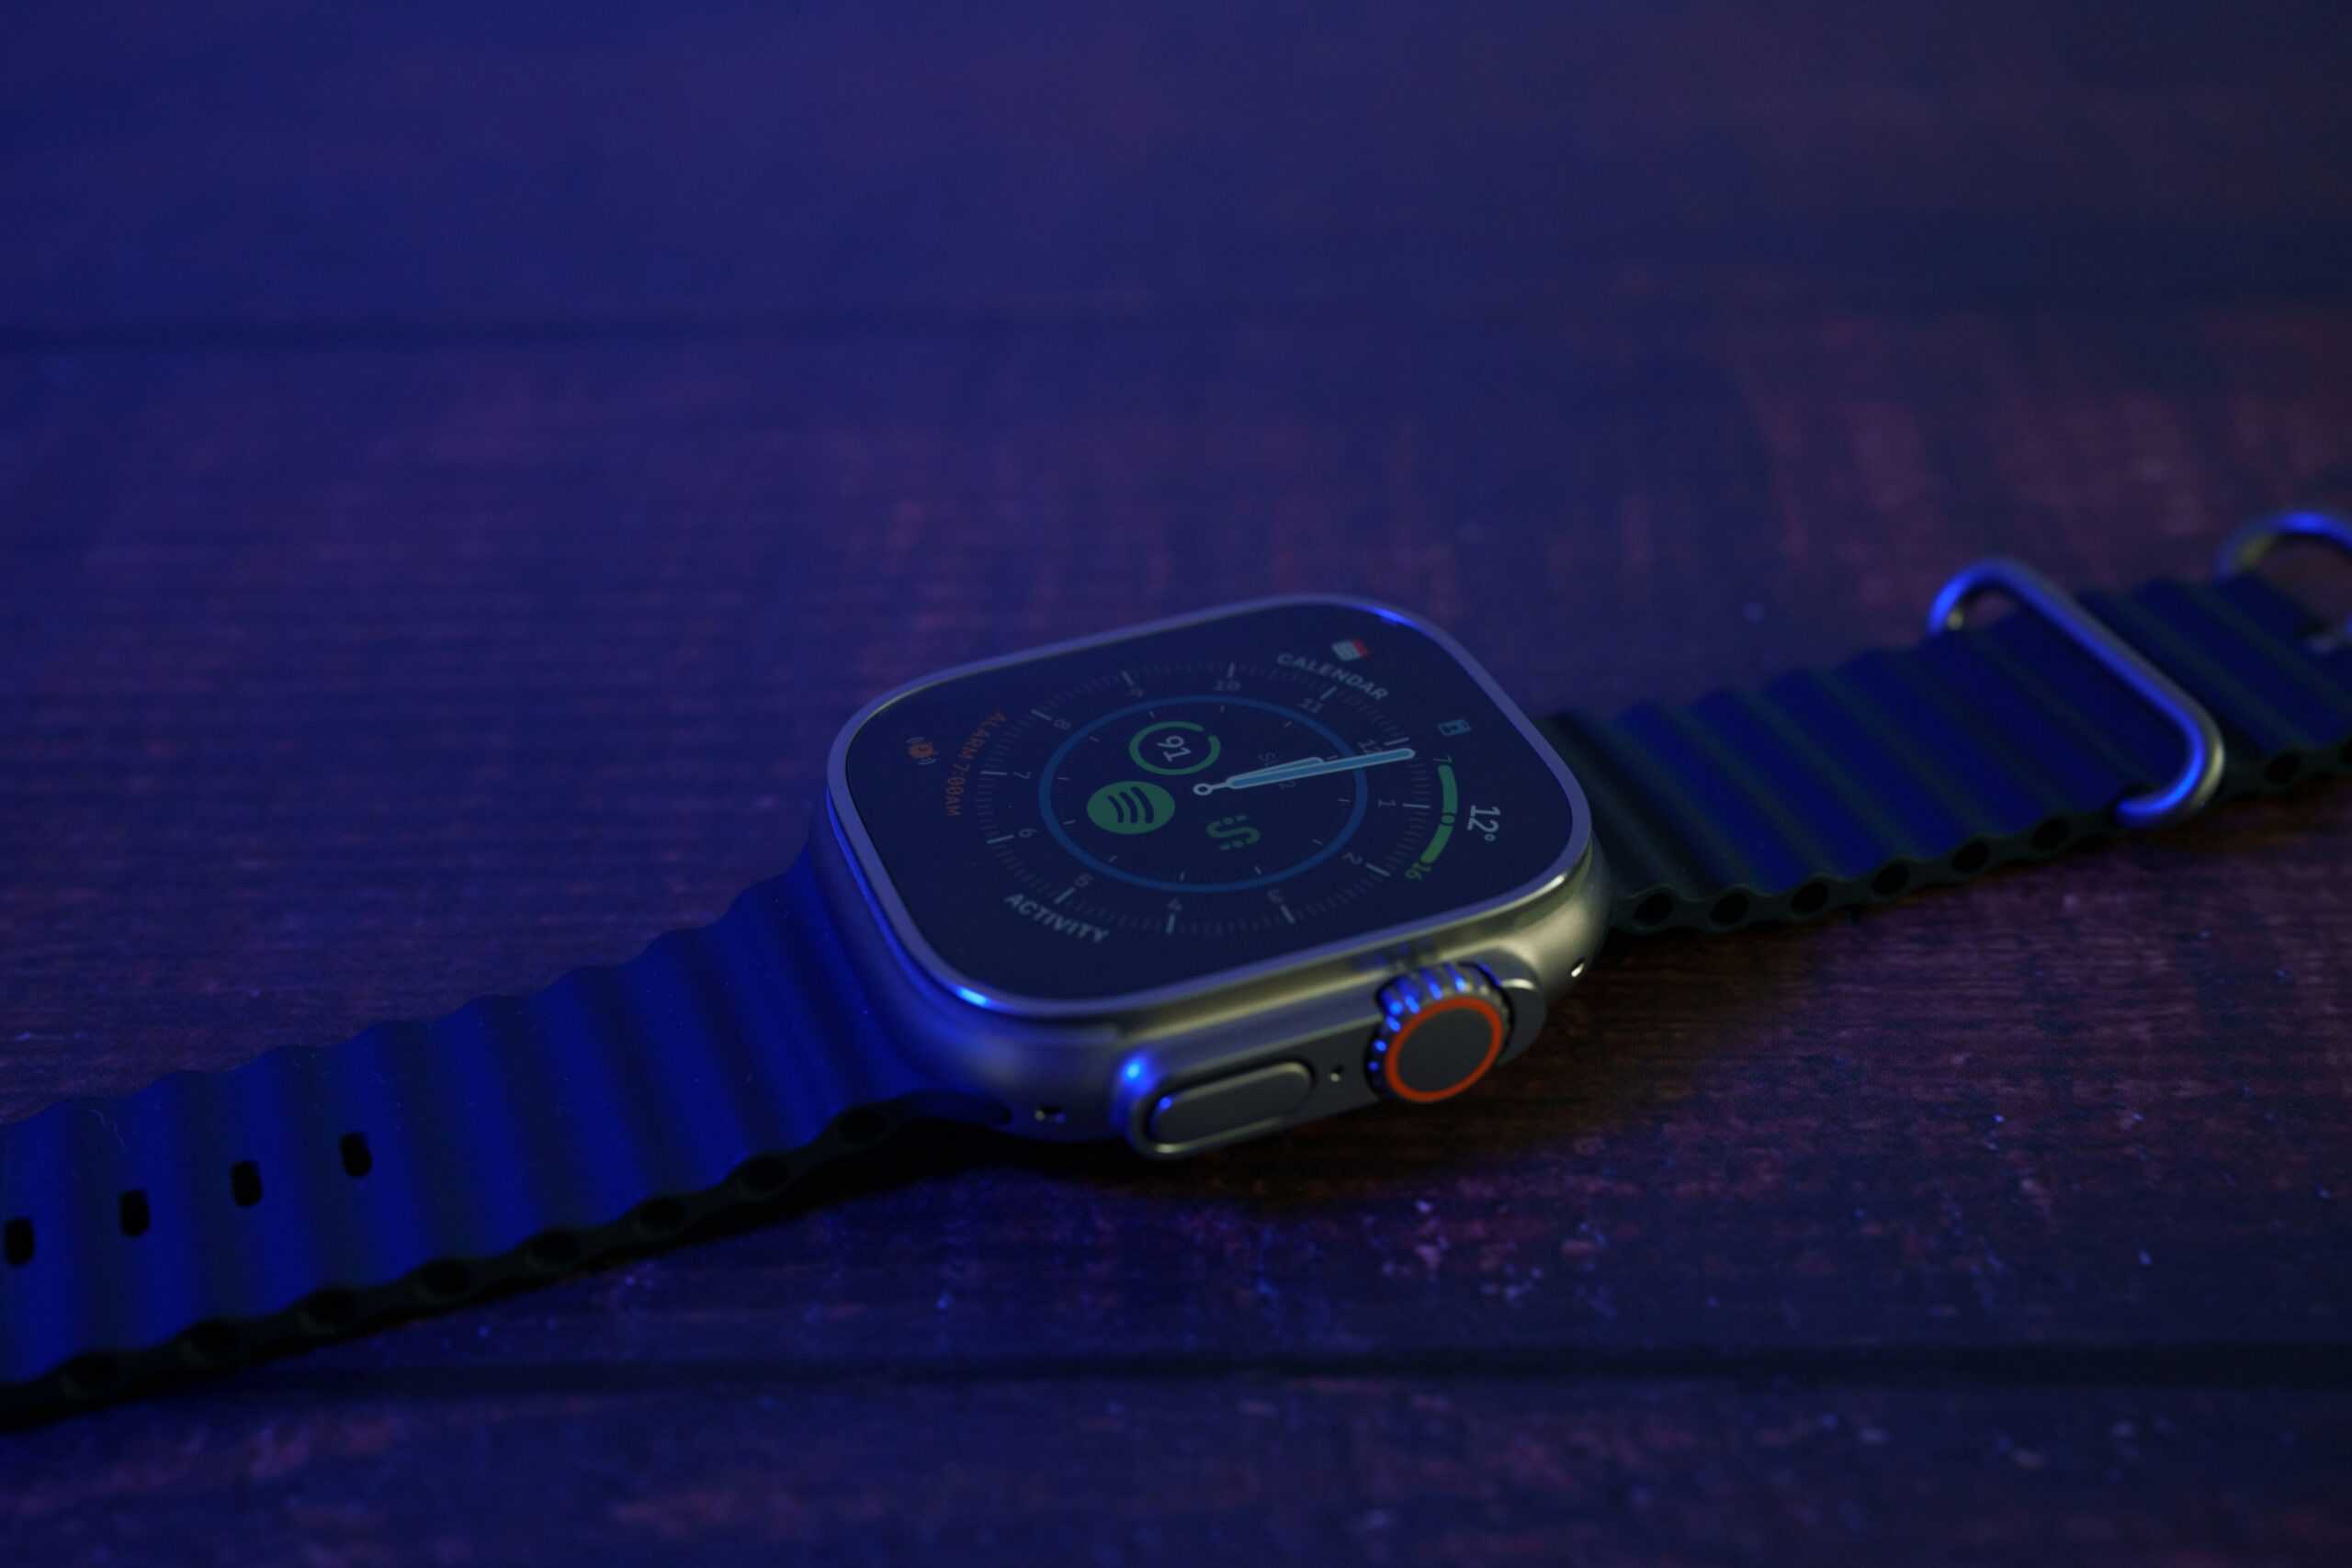 Appleは当面Apple WatchにMicroLEDを採用しないようだ